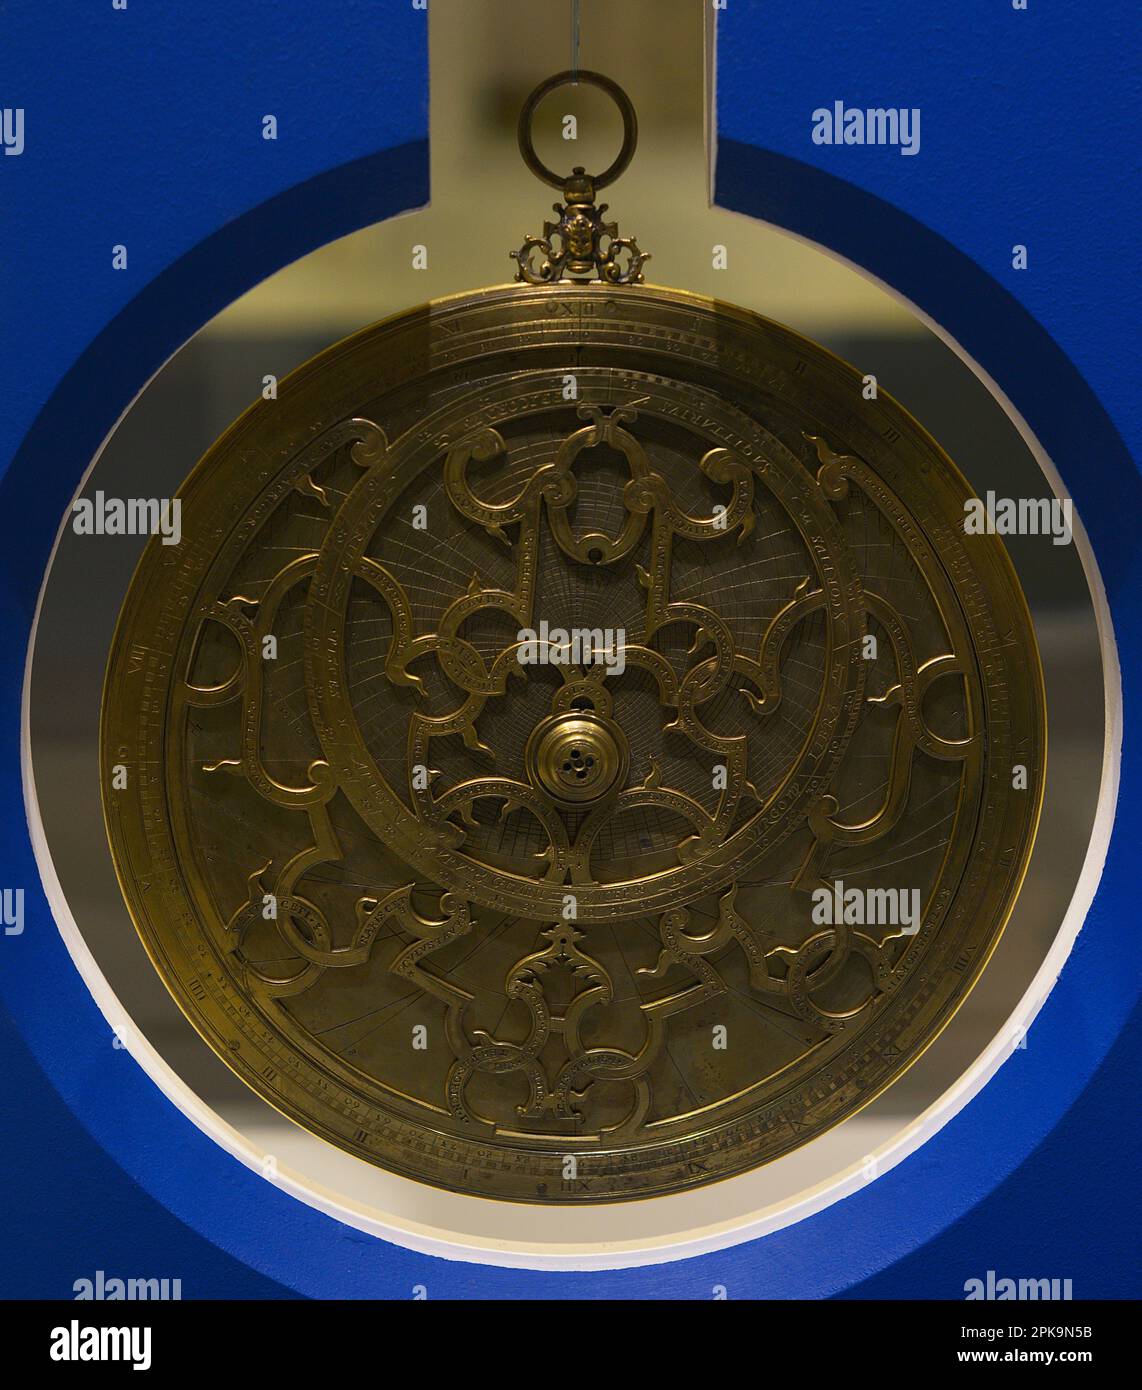 Astrolabe planisphérique. Instrument astronomique d'origine française, fabriqué par Nicol Patenal. En date du 1616. Musée maritime. Lisbonne, Portugal. Banque D'Images